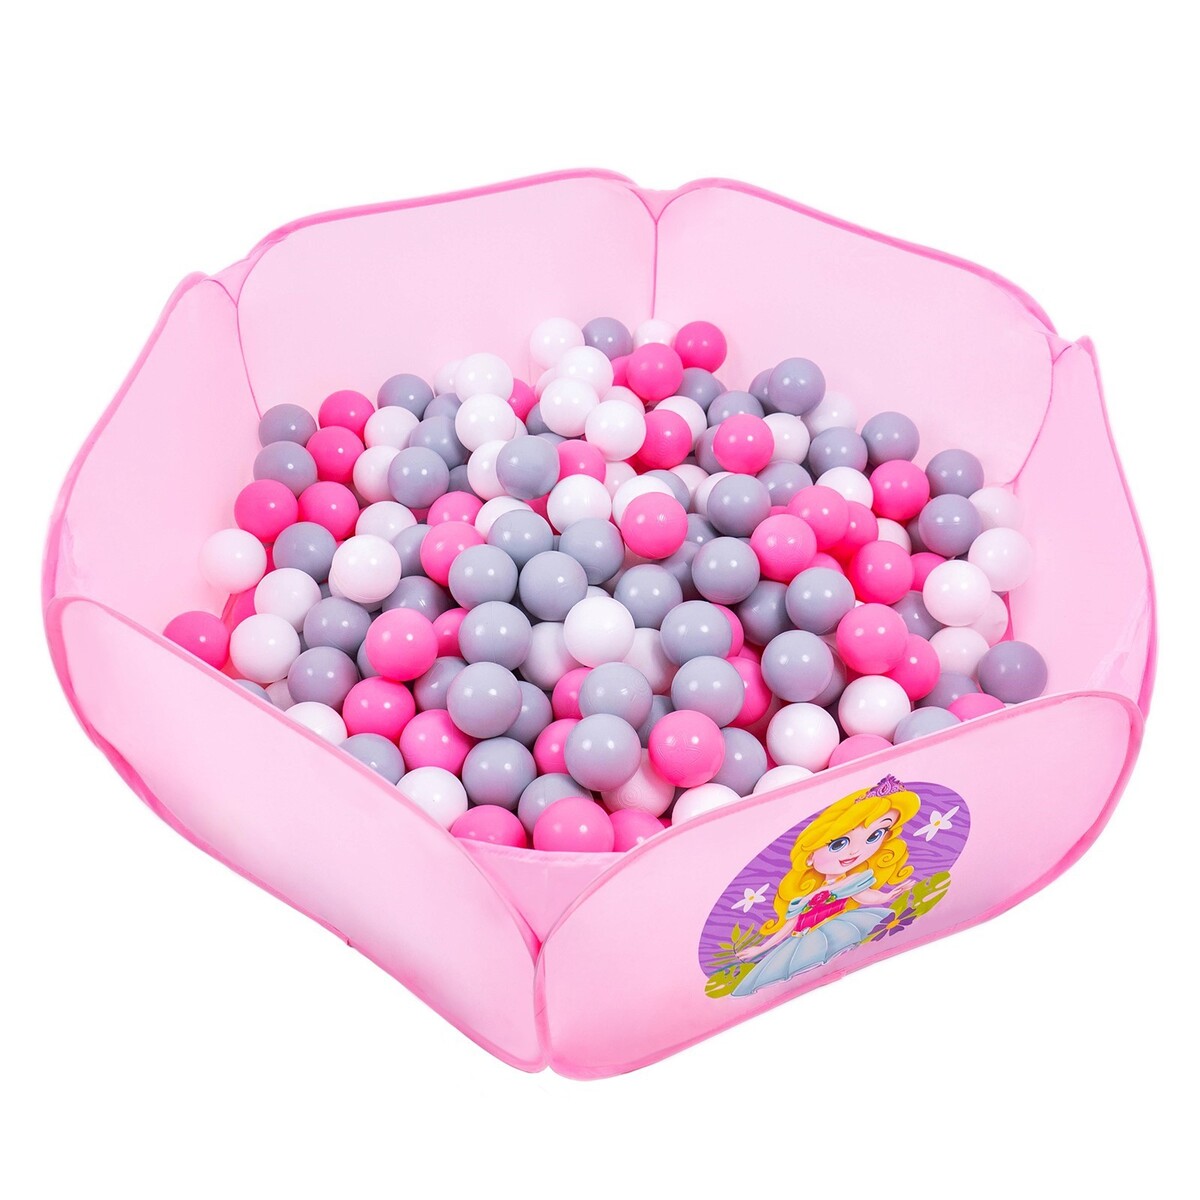 Шарики для сухого бассейна с рисунком, диаметр шара 7,5 см, набор 150 штук, цвет розовый, белый, серый кассон шарики для бассейна 7 см 100 шт